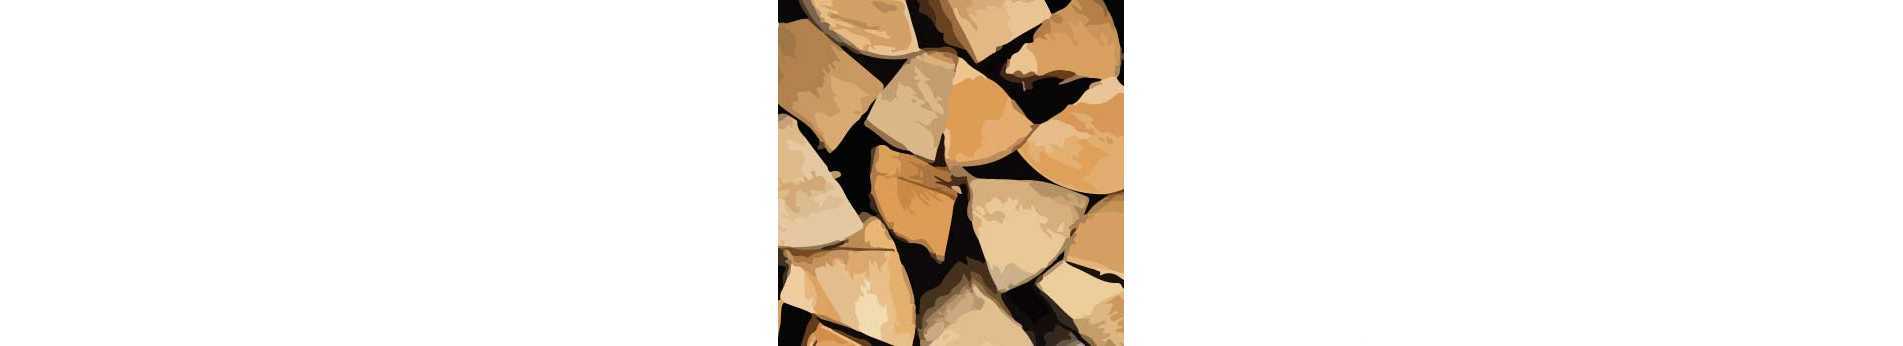 Abbattimento, taglio e spacco del legno